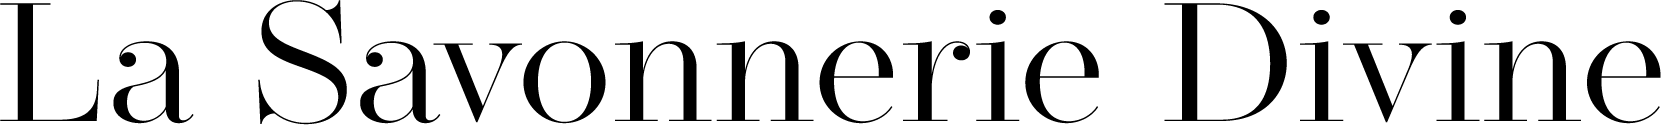 la savonnerie divine logo